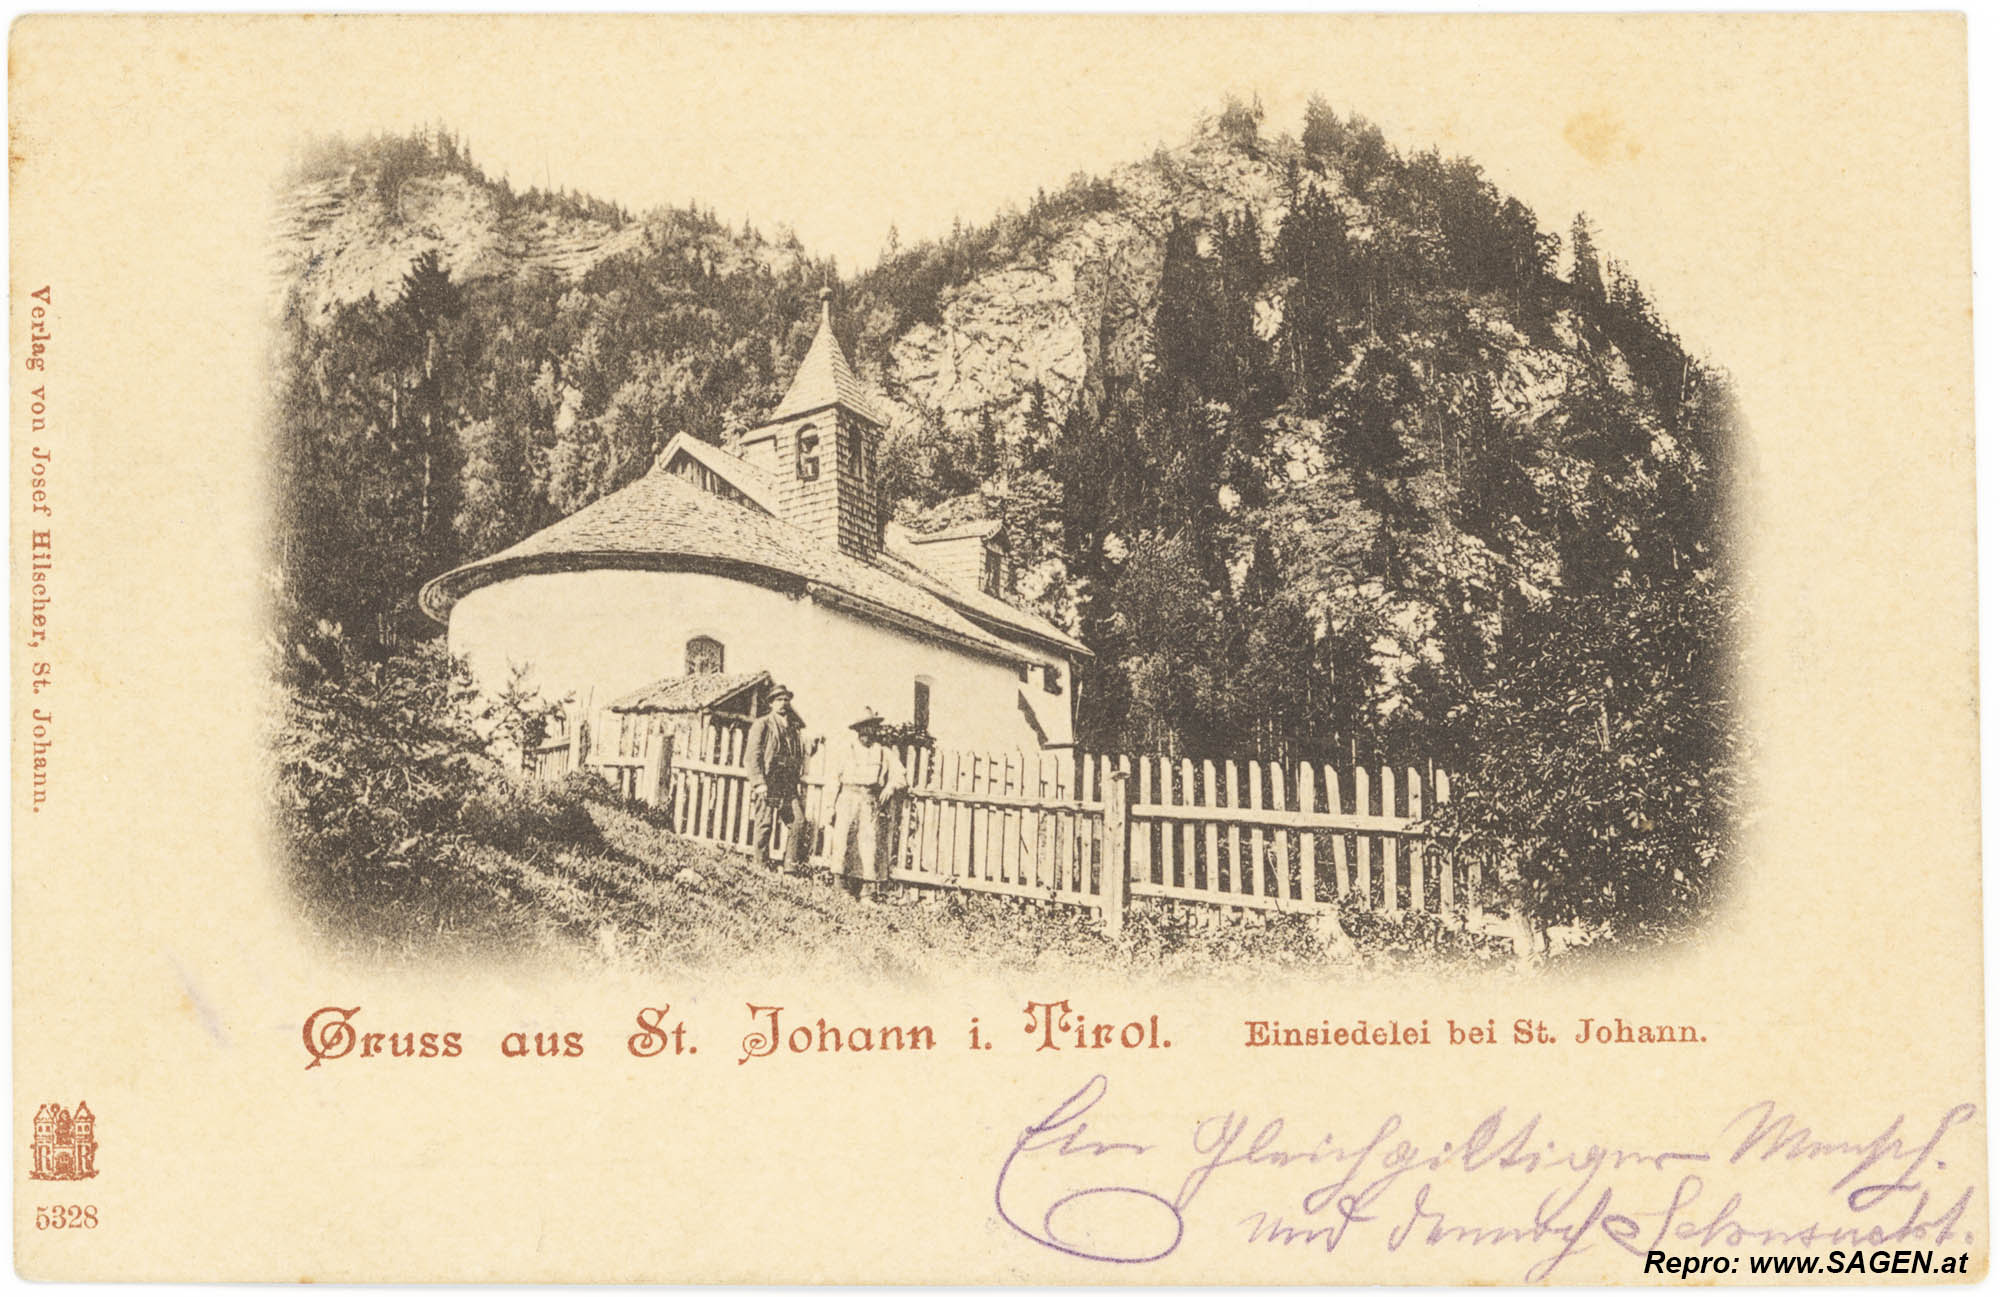 St. Johann in Tirol, Einsiedelei